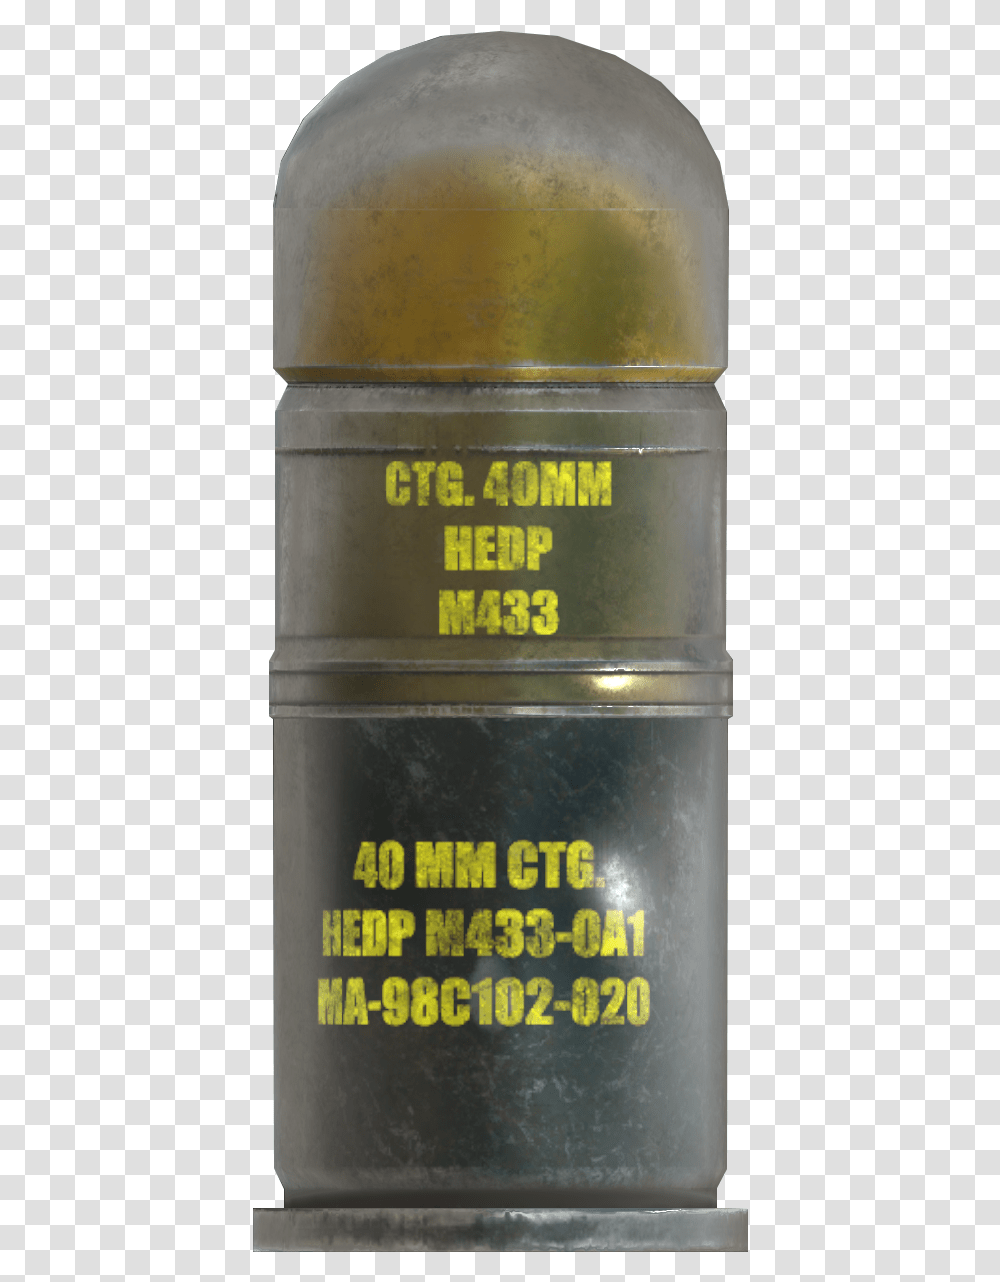 40mm Grenade Bottle, Keg, Barrel, Beer, Alcohol Transparent Png